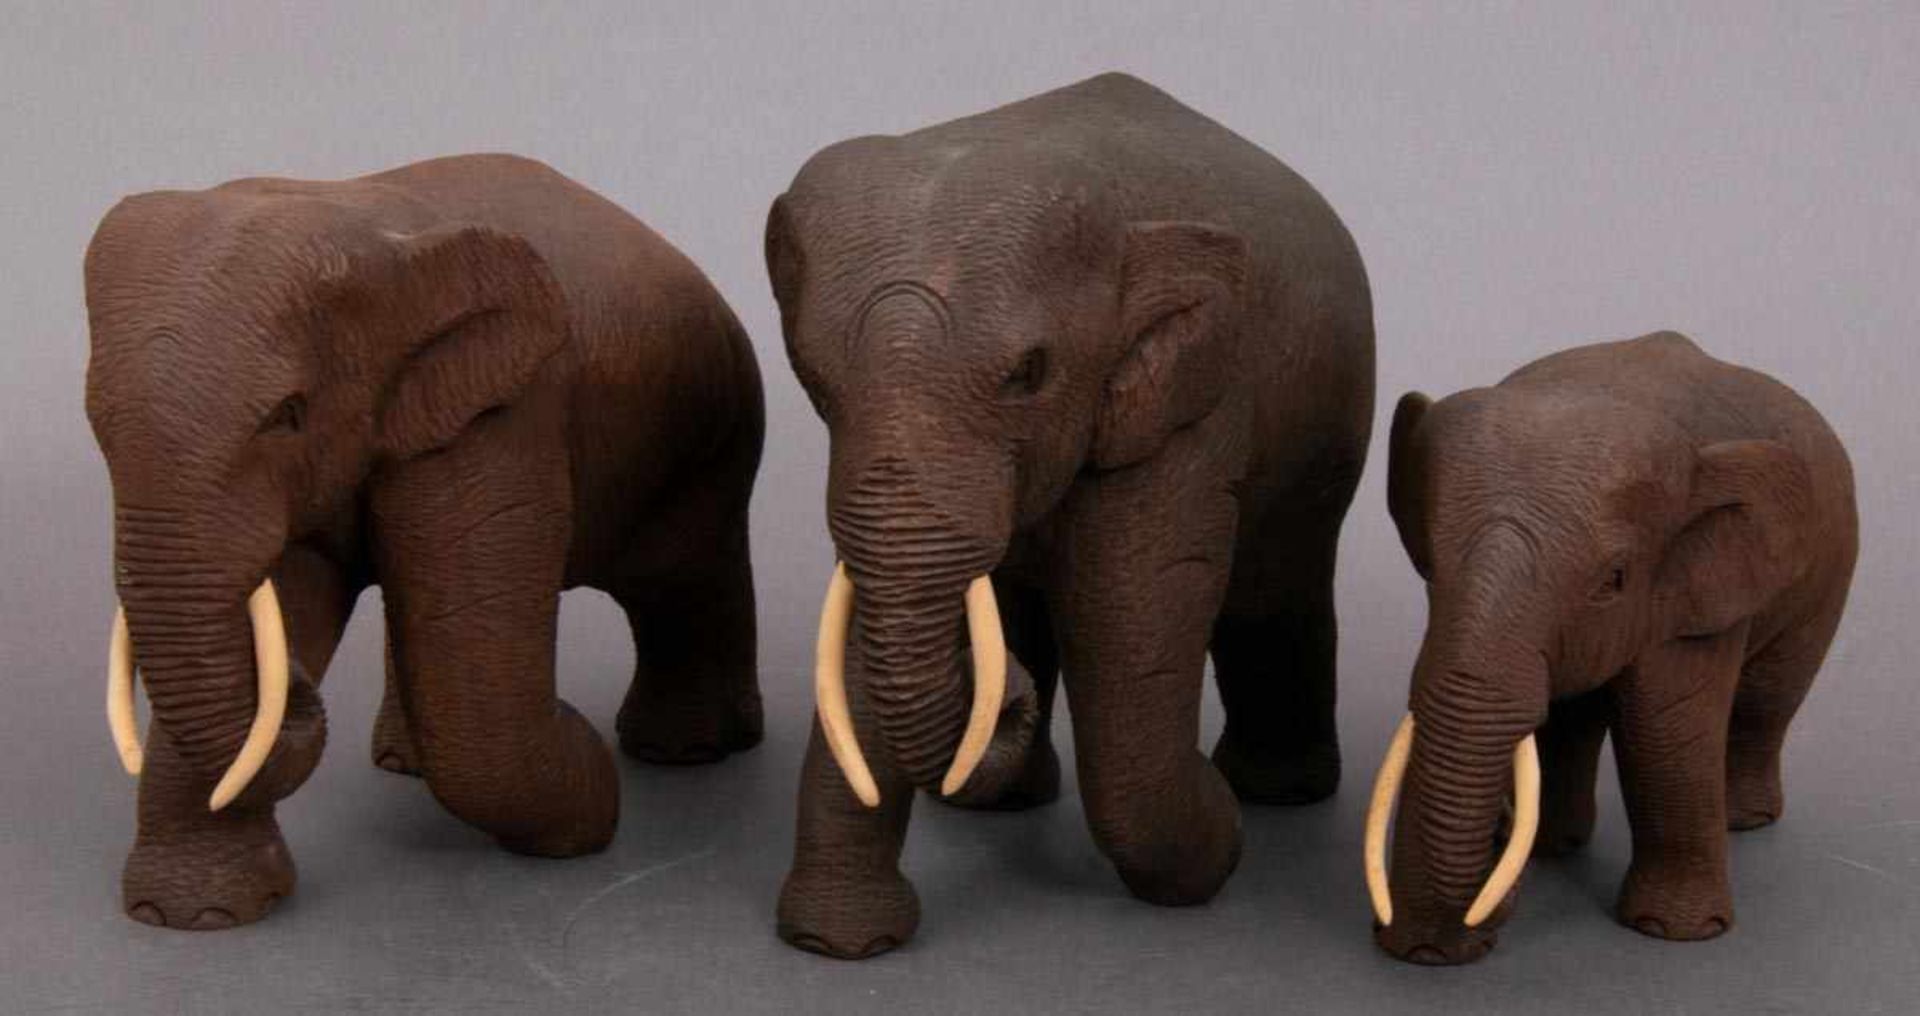 3 geschnitzte Elefanten, dunkles Hartholz, Stoßzähne aus Knochen/Bein. Max. Höhe ca. 15,5 cm, max.